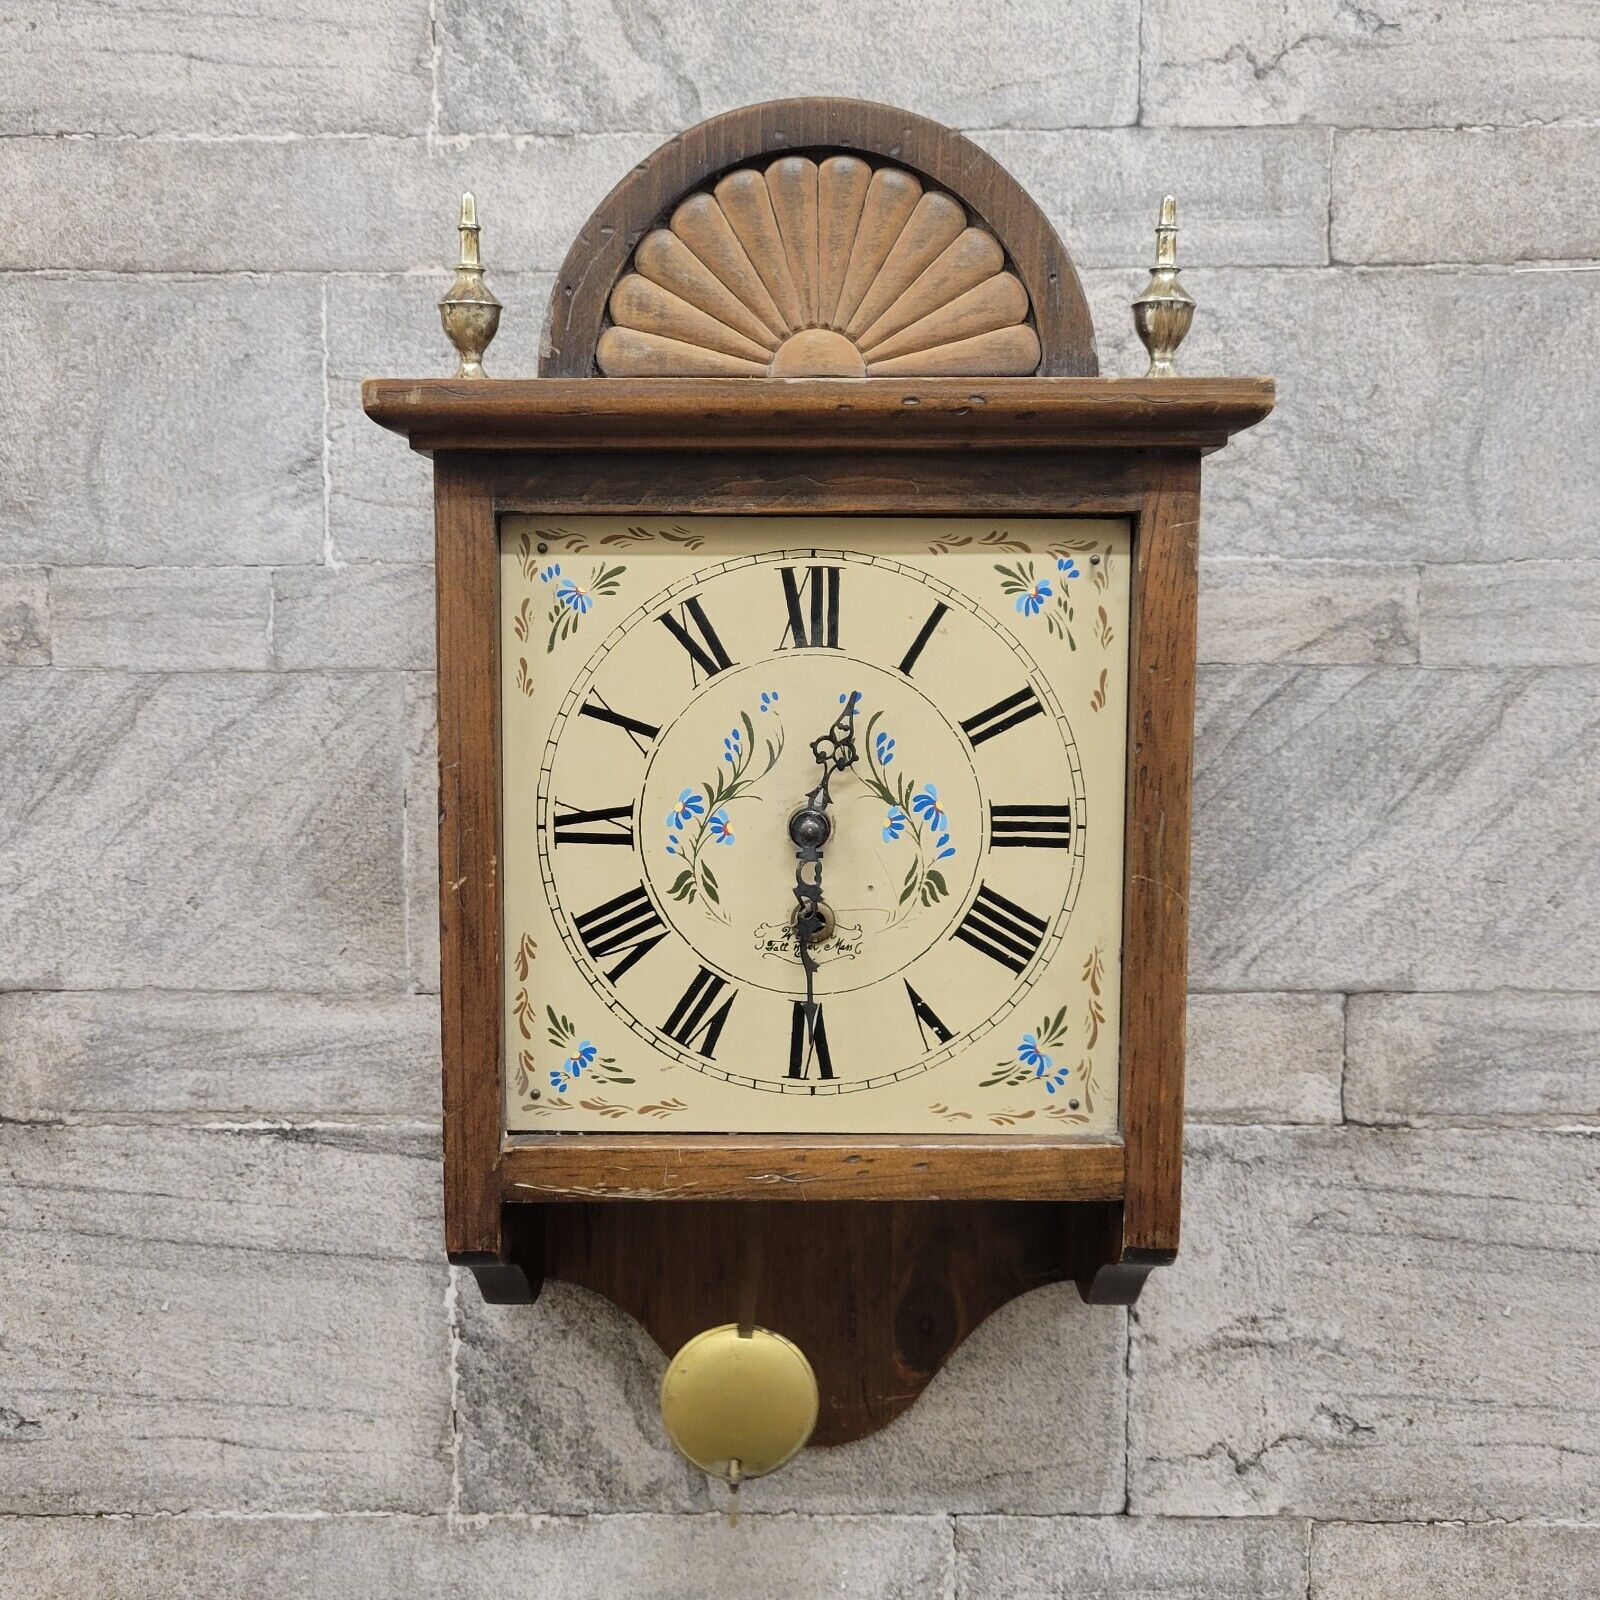 Wuersch Wood Pendulum Wind Up Wall Clock Fall River, Mass with Key